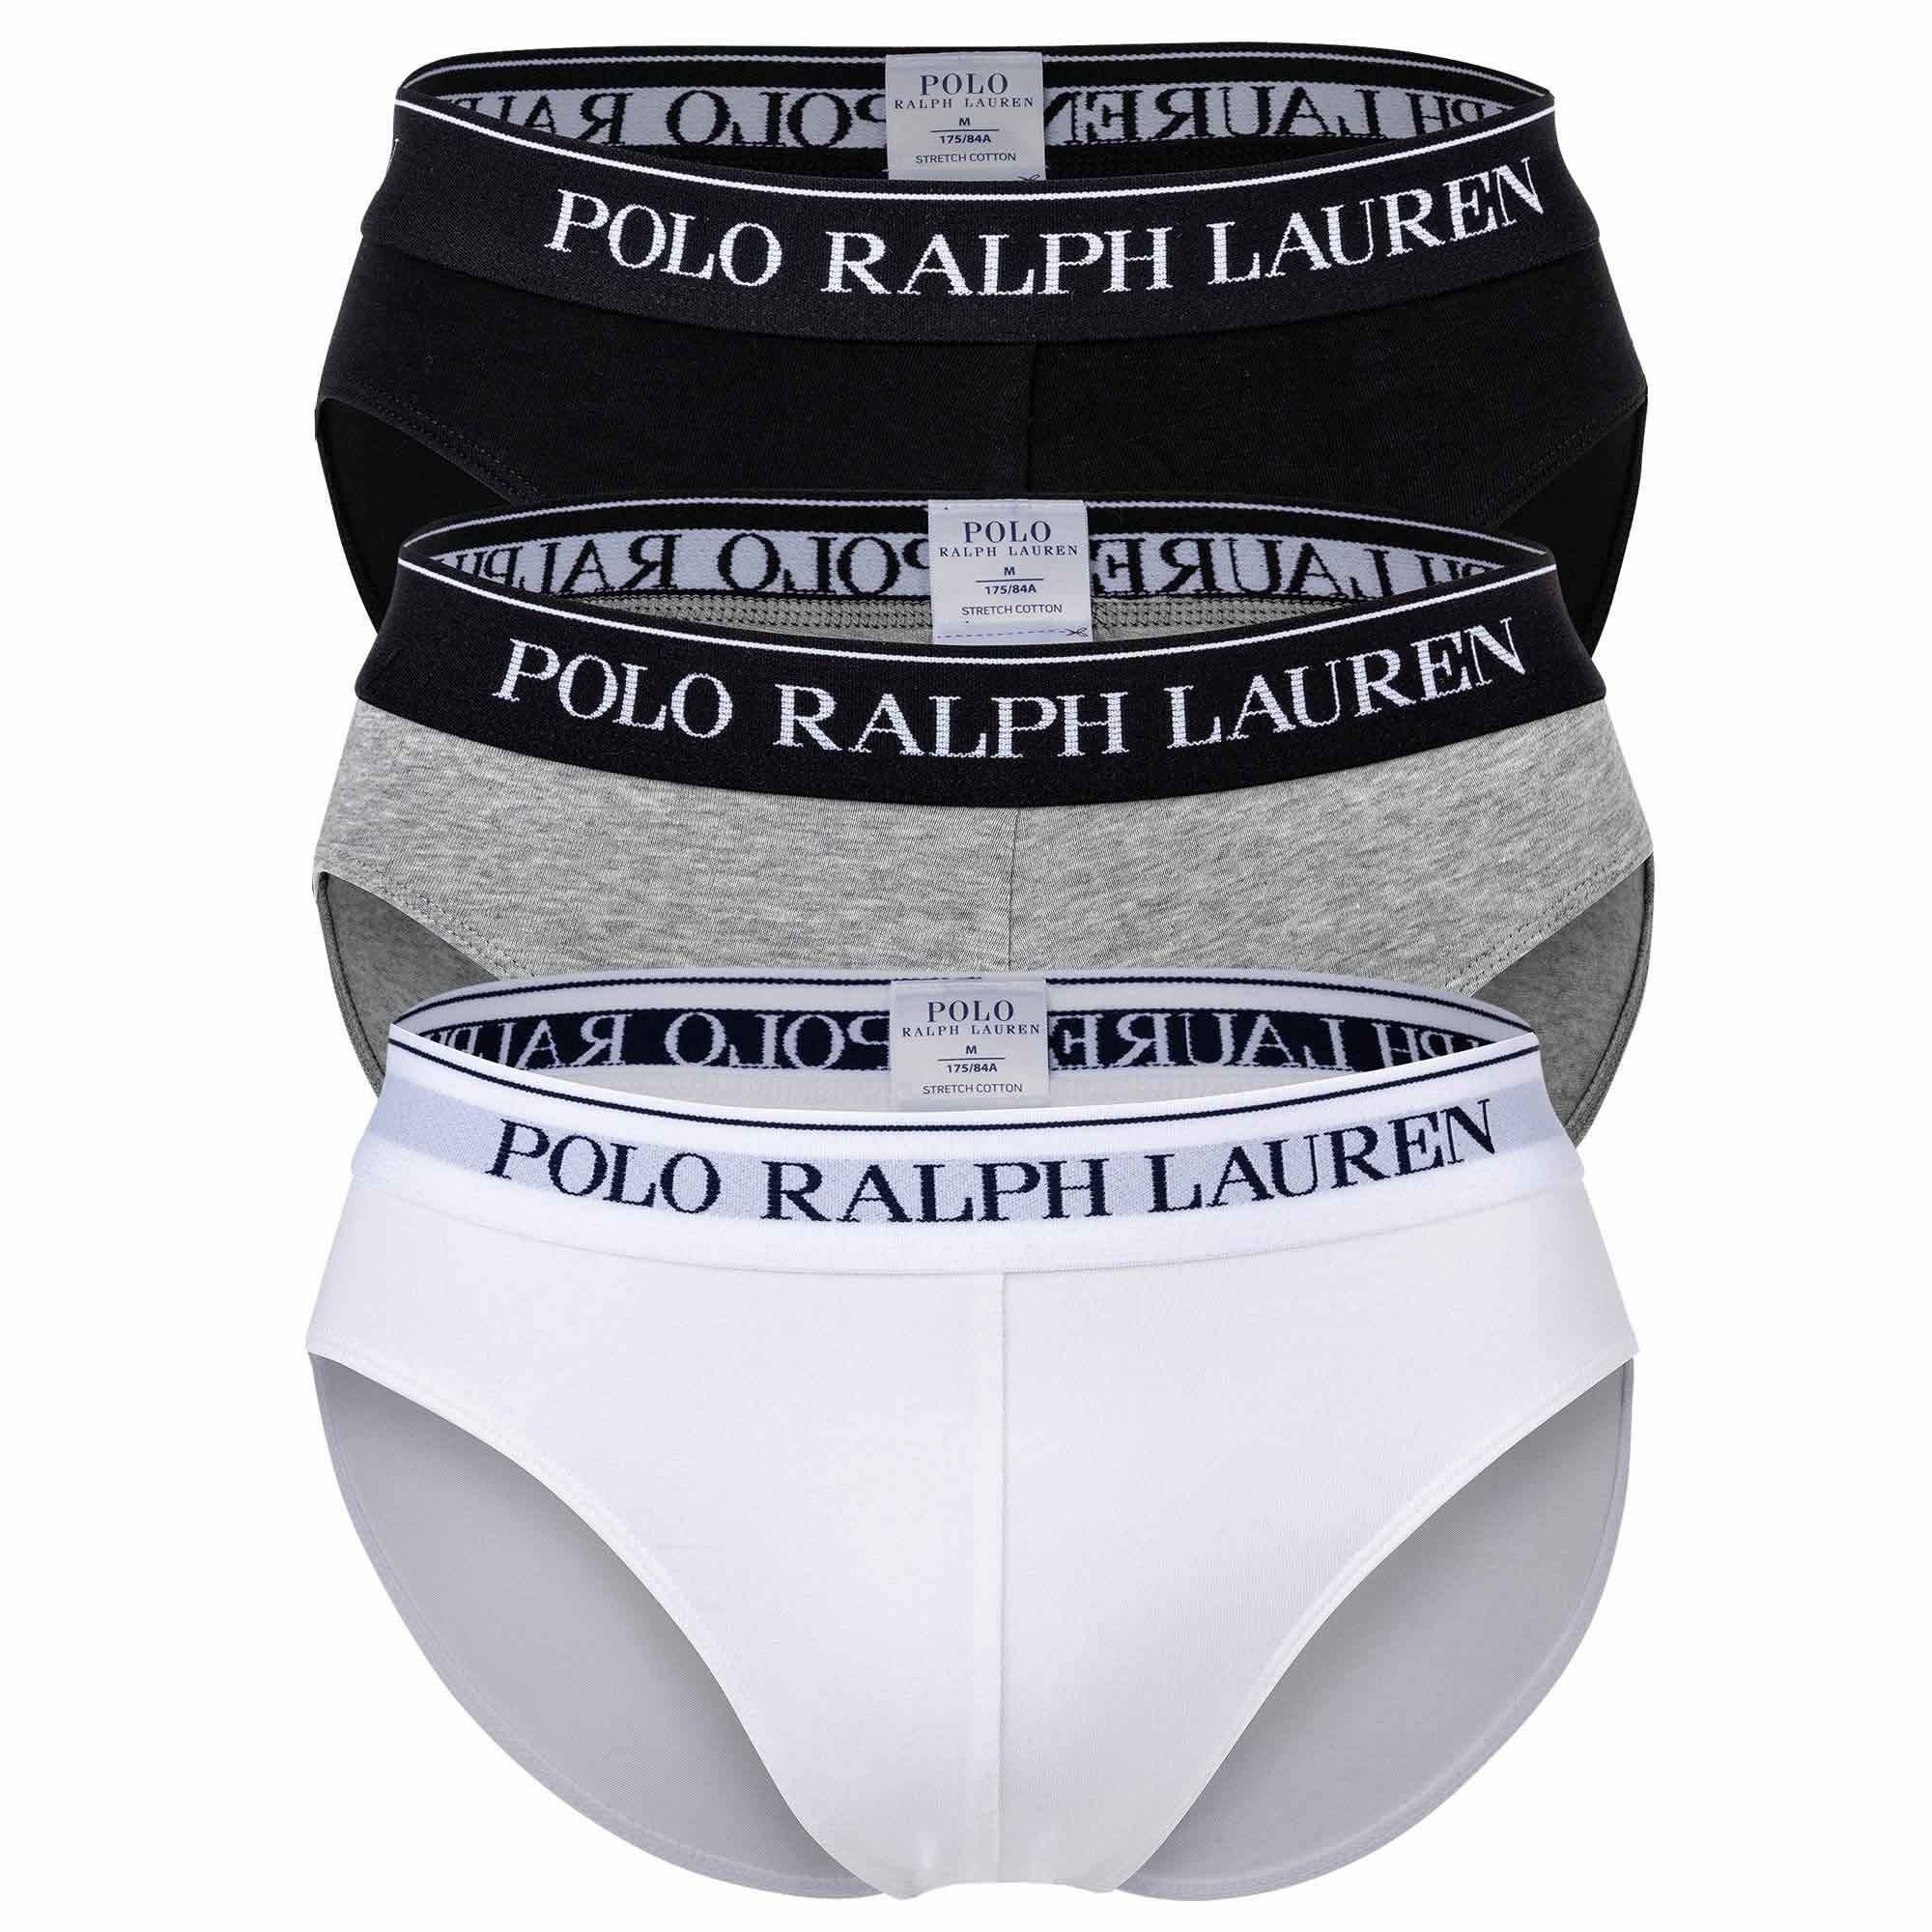 Polo Ralph Lauren Slip Herren Männer Slip Unterhose Brief Low Rise Schwarz/Weiß/Grau